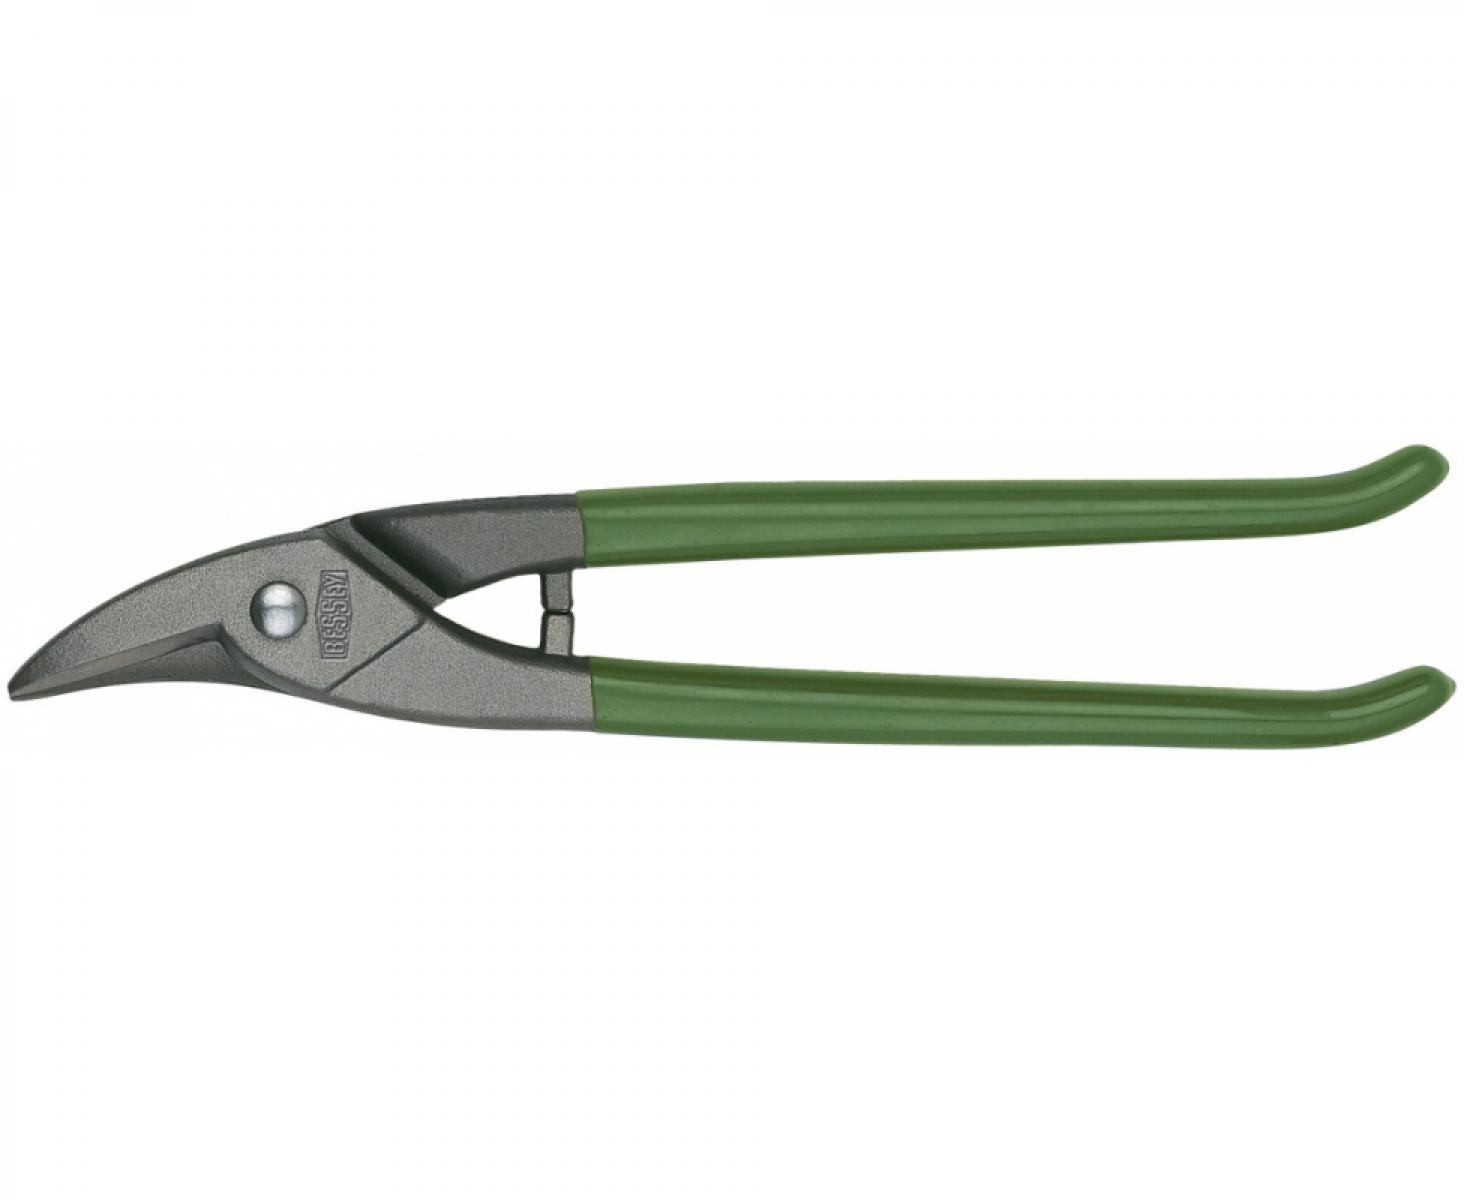 Фигурные обычные ножницы для отверстий Erdi ER-D114-250-SB праворежущие